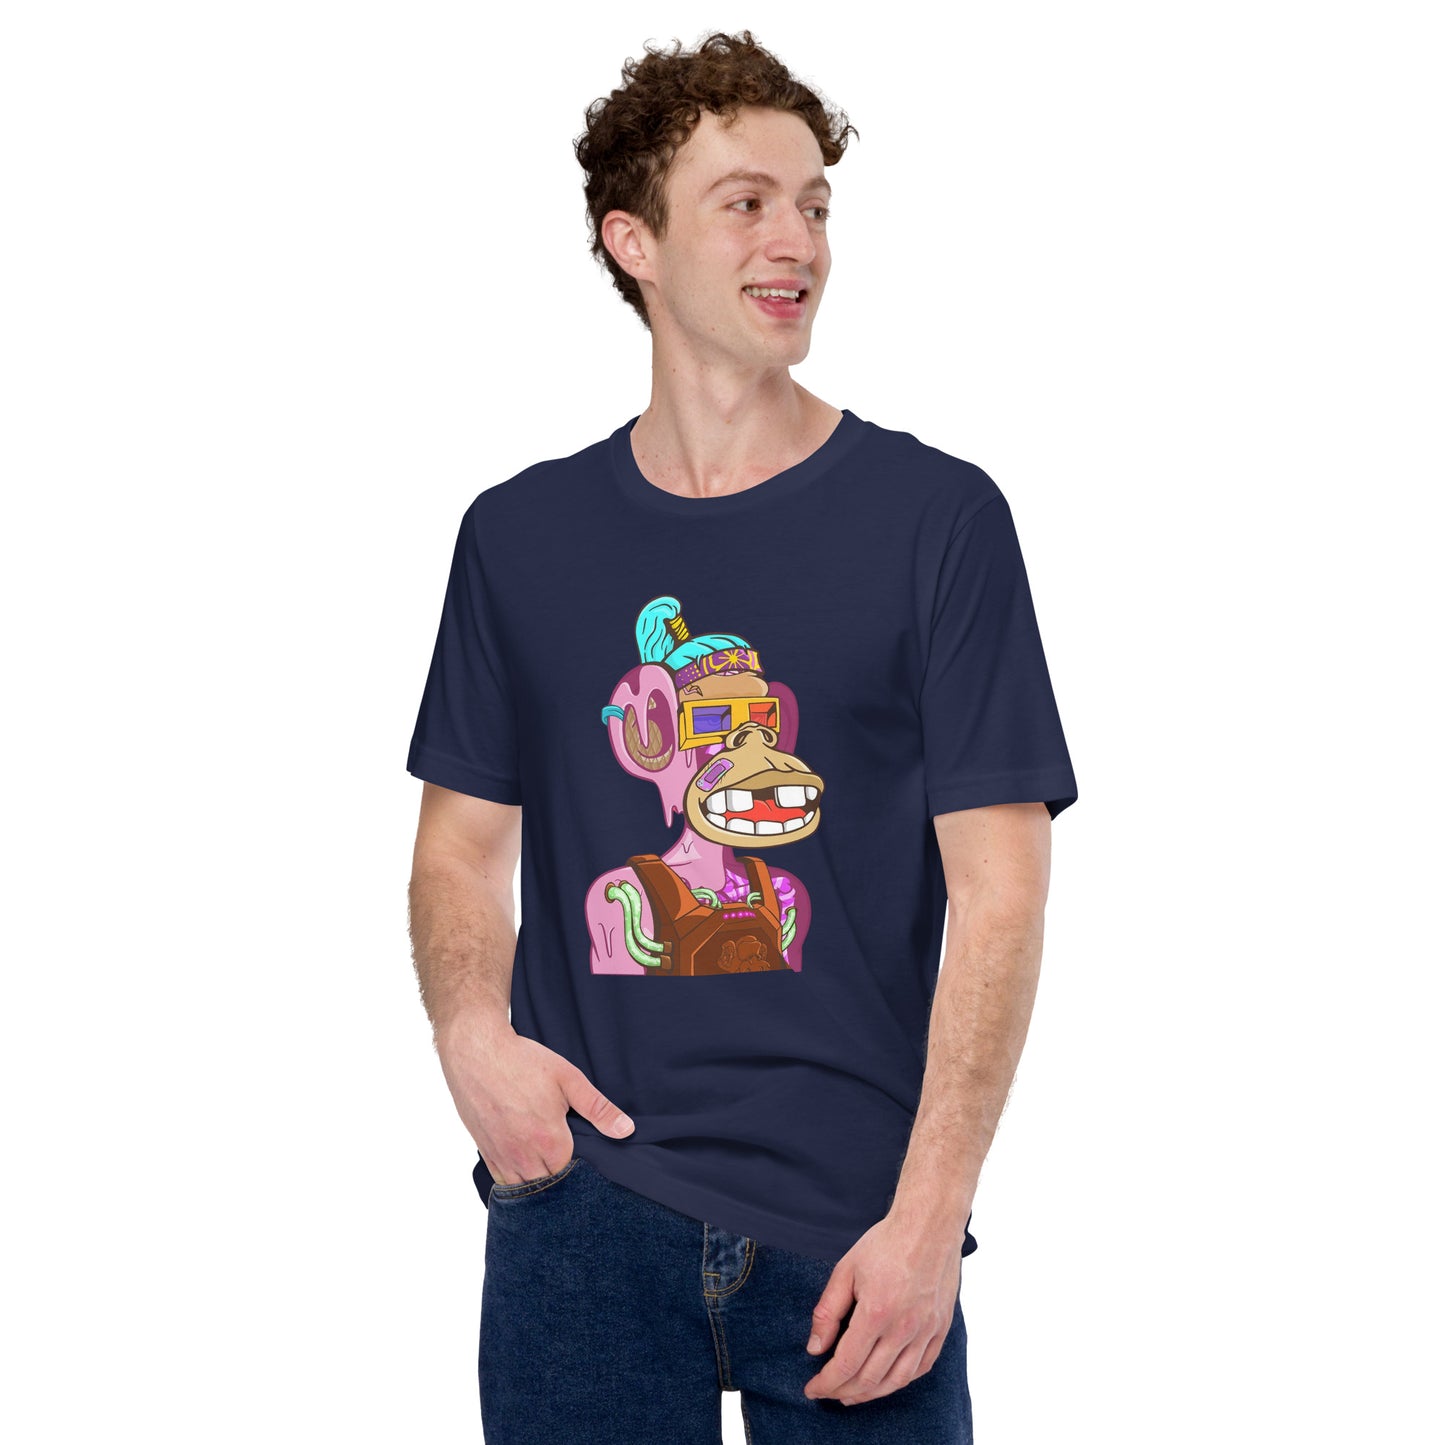 Fun Ape #7138, Unisex t-shirt, emilioeescobar